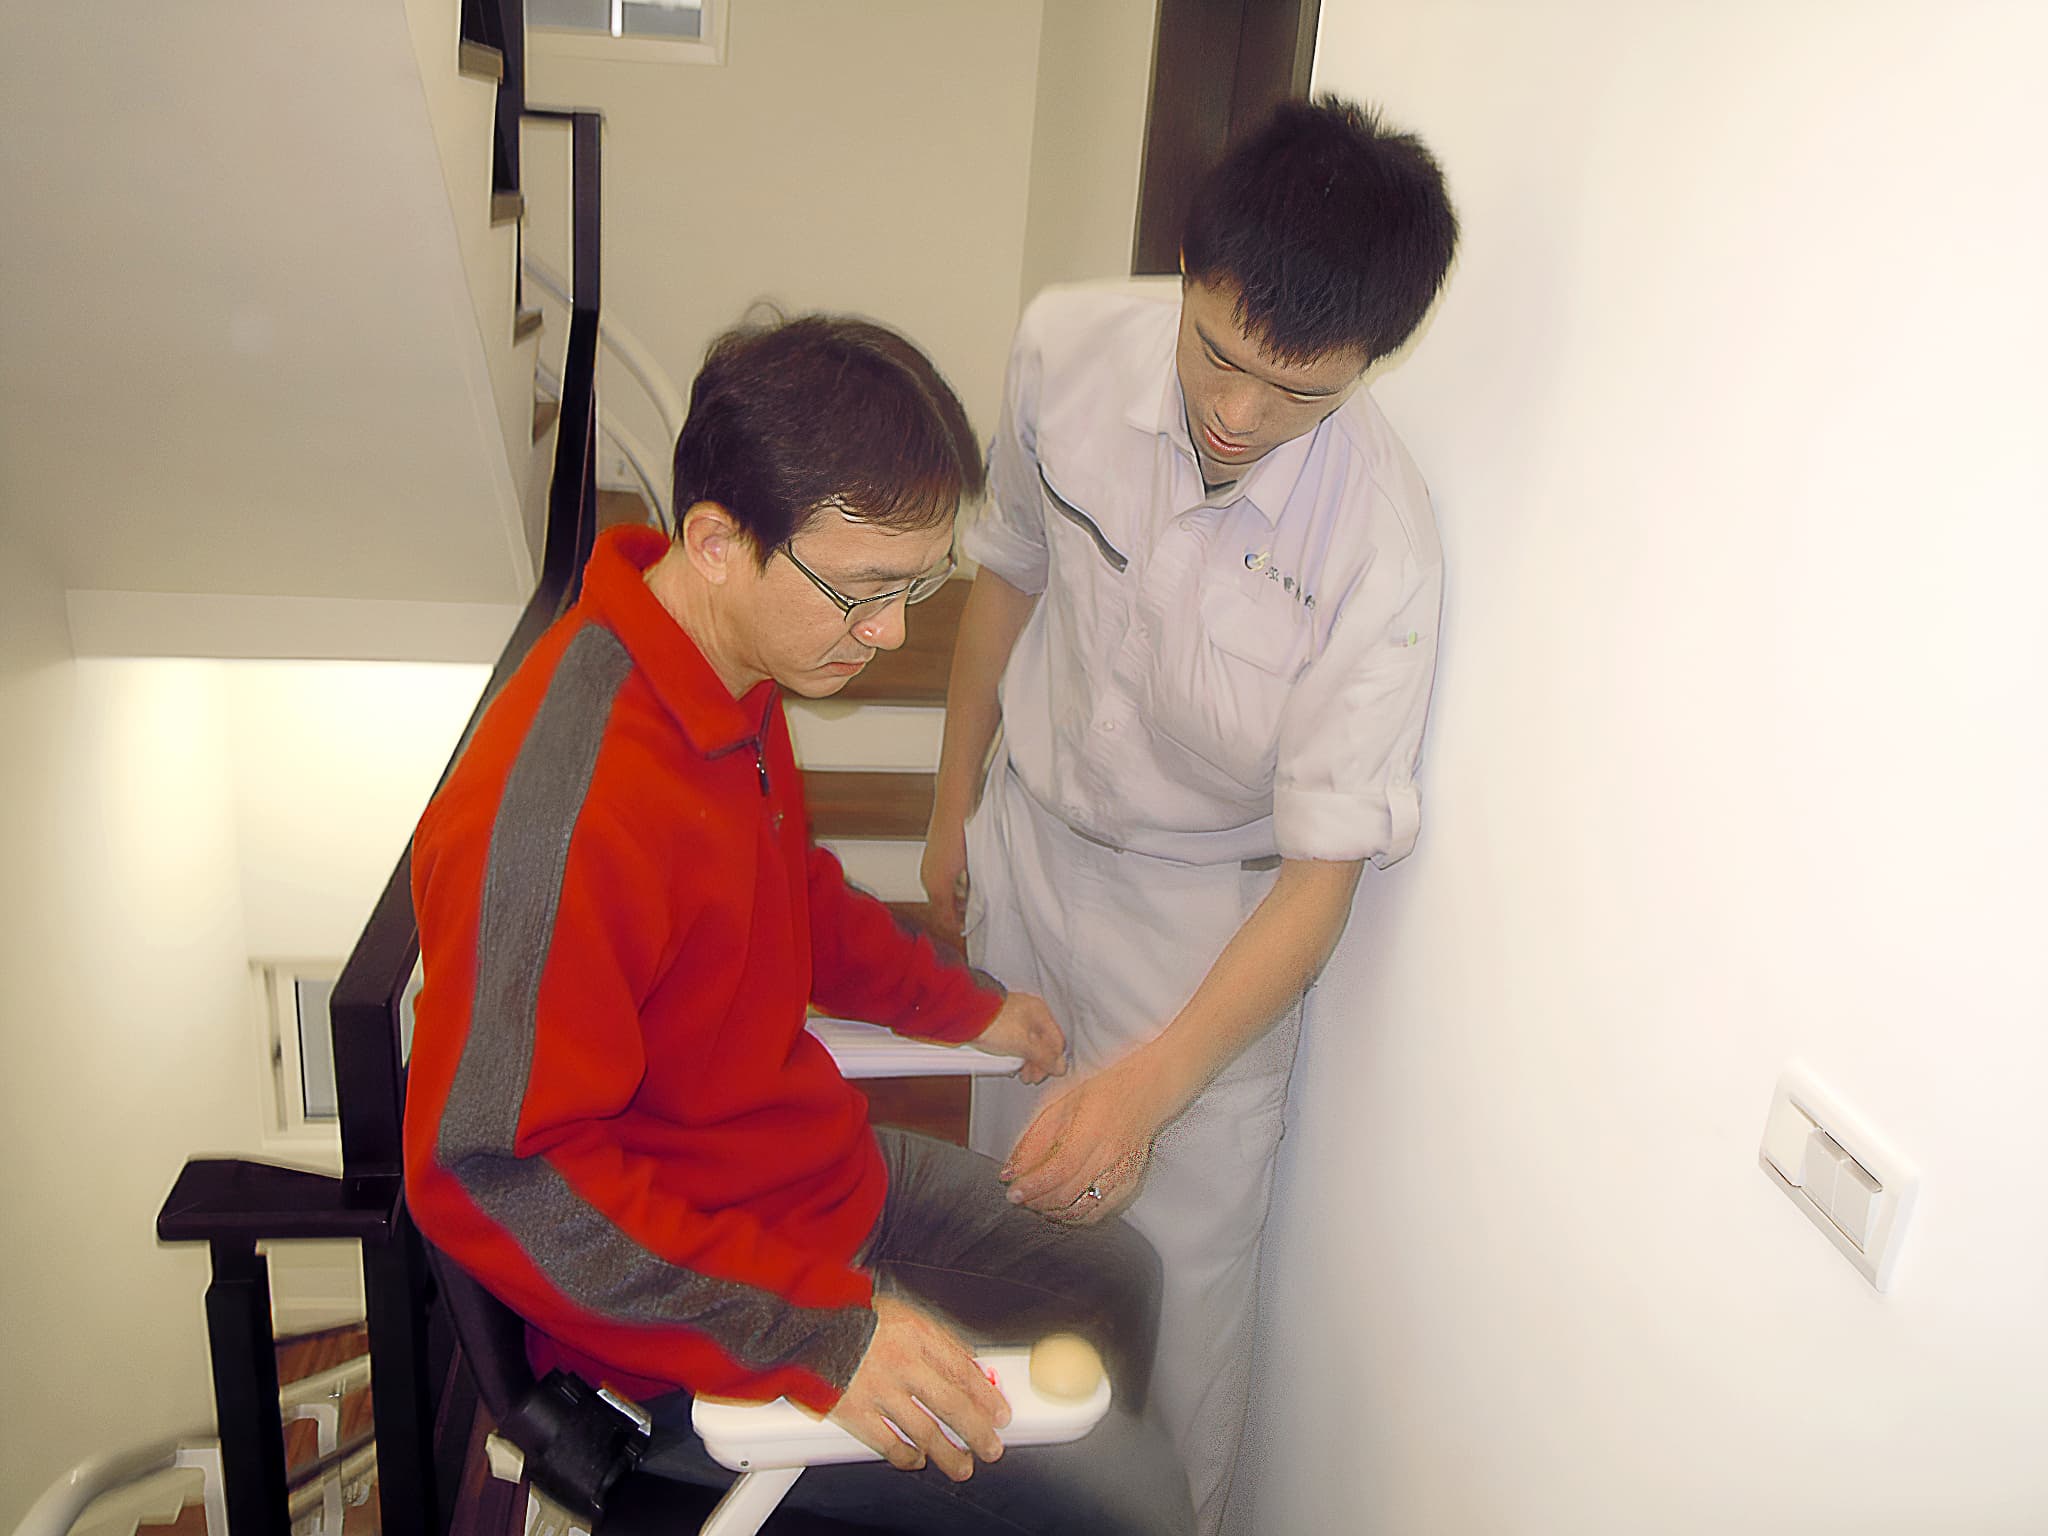 泓電樓梯升降椅的工程師正在教導趙先生如何使用升降椅